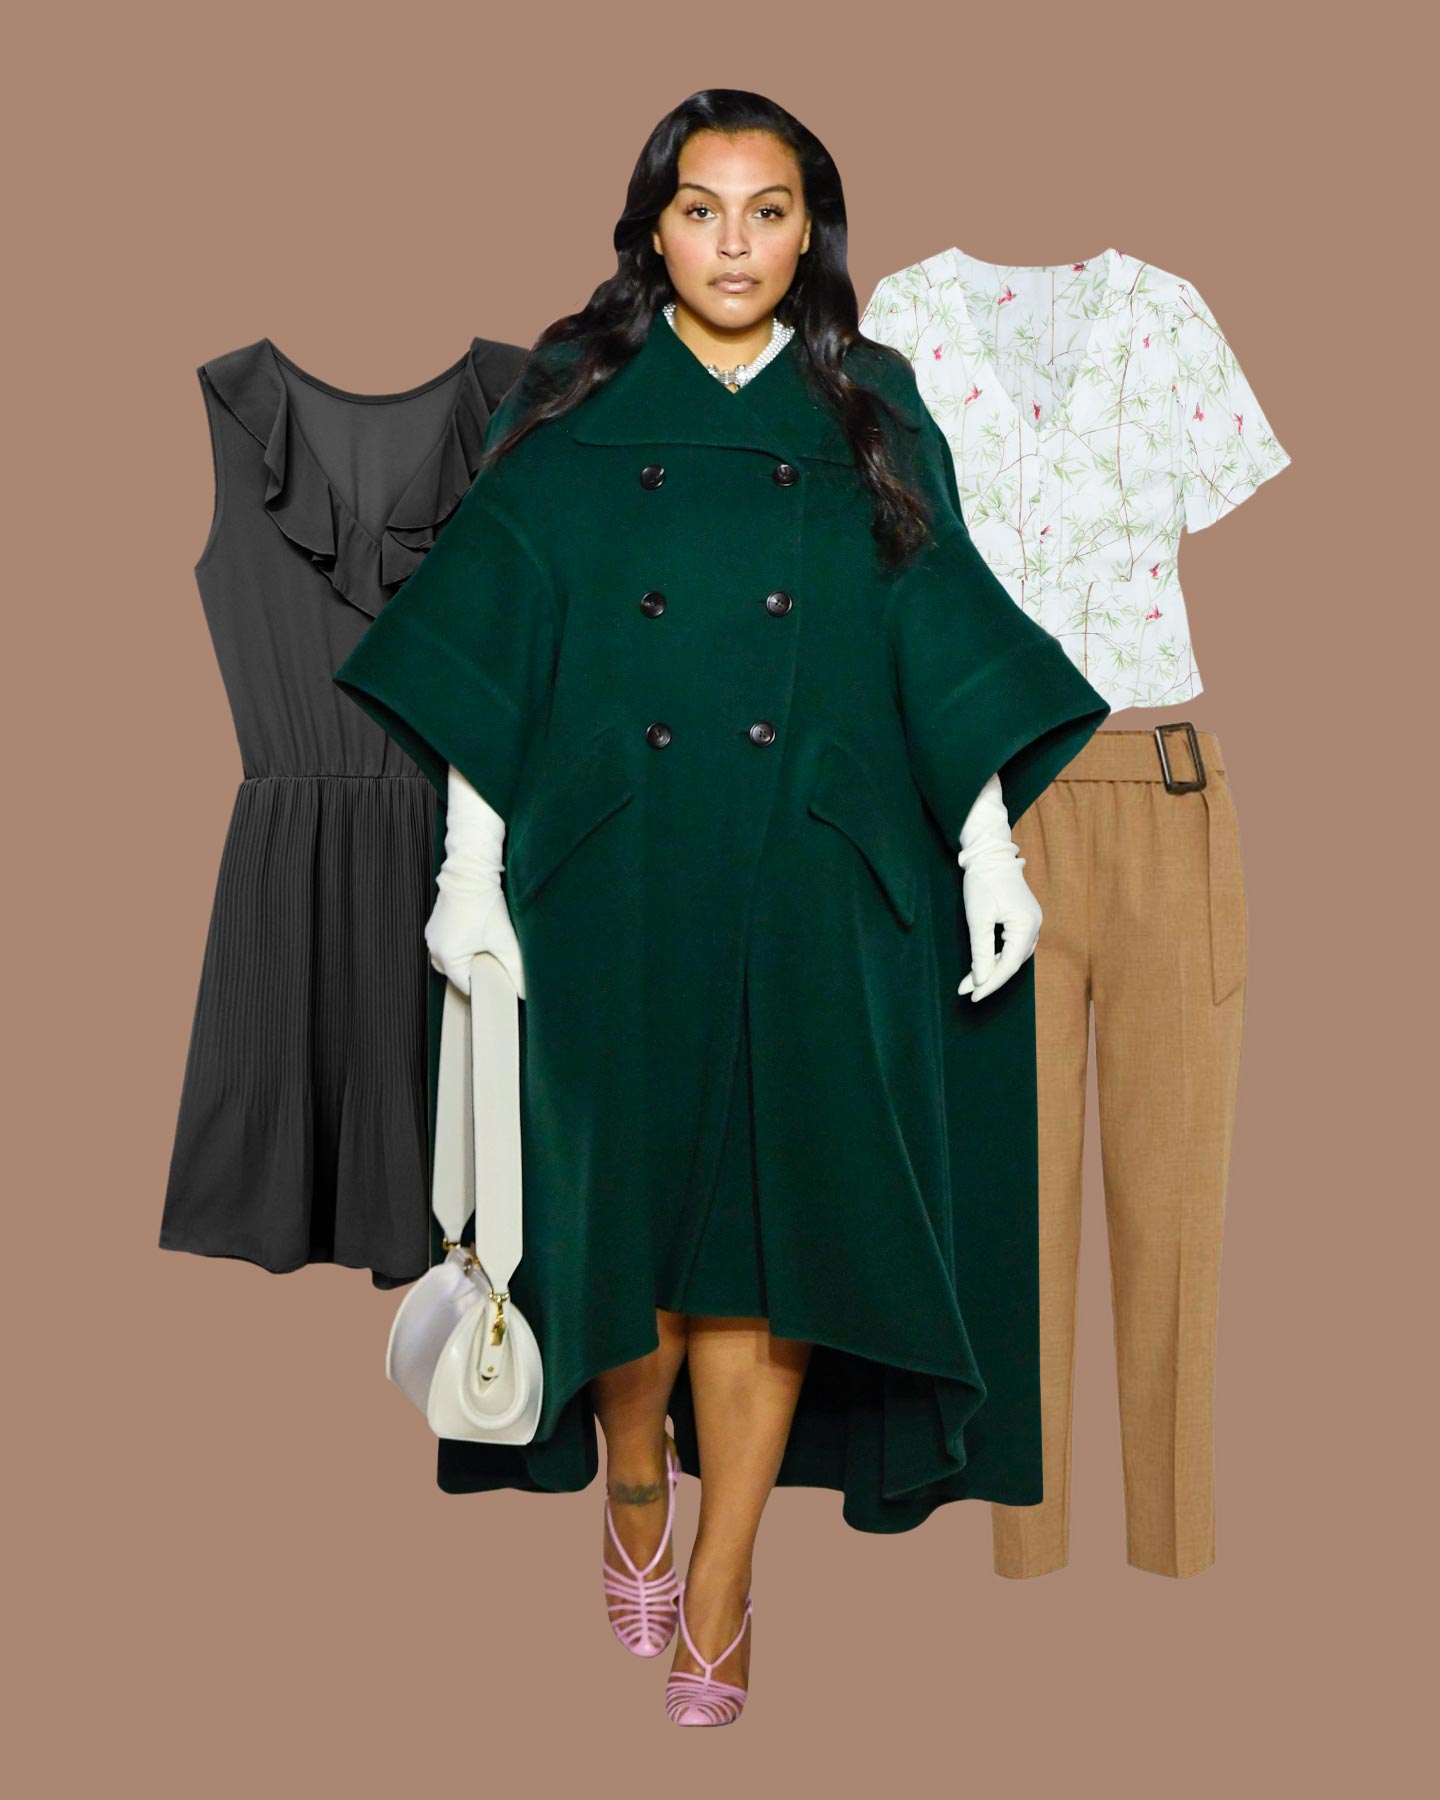 Cómo vestir si eres una mujer bajita - Lookiero Blog